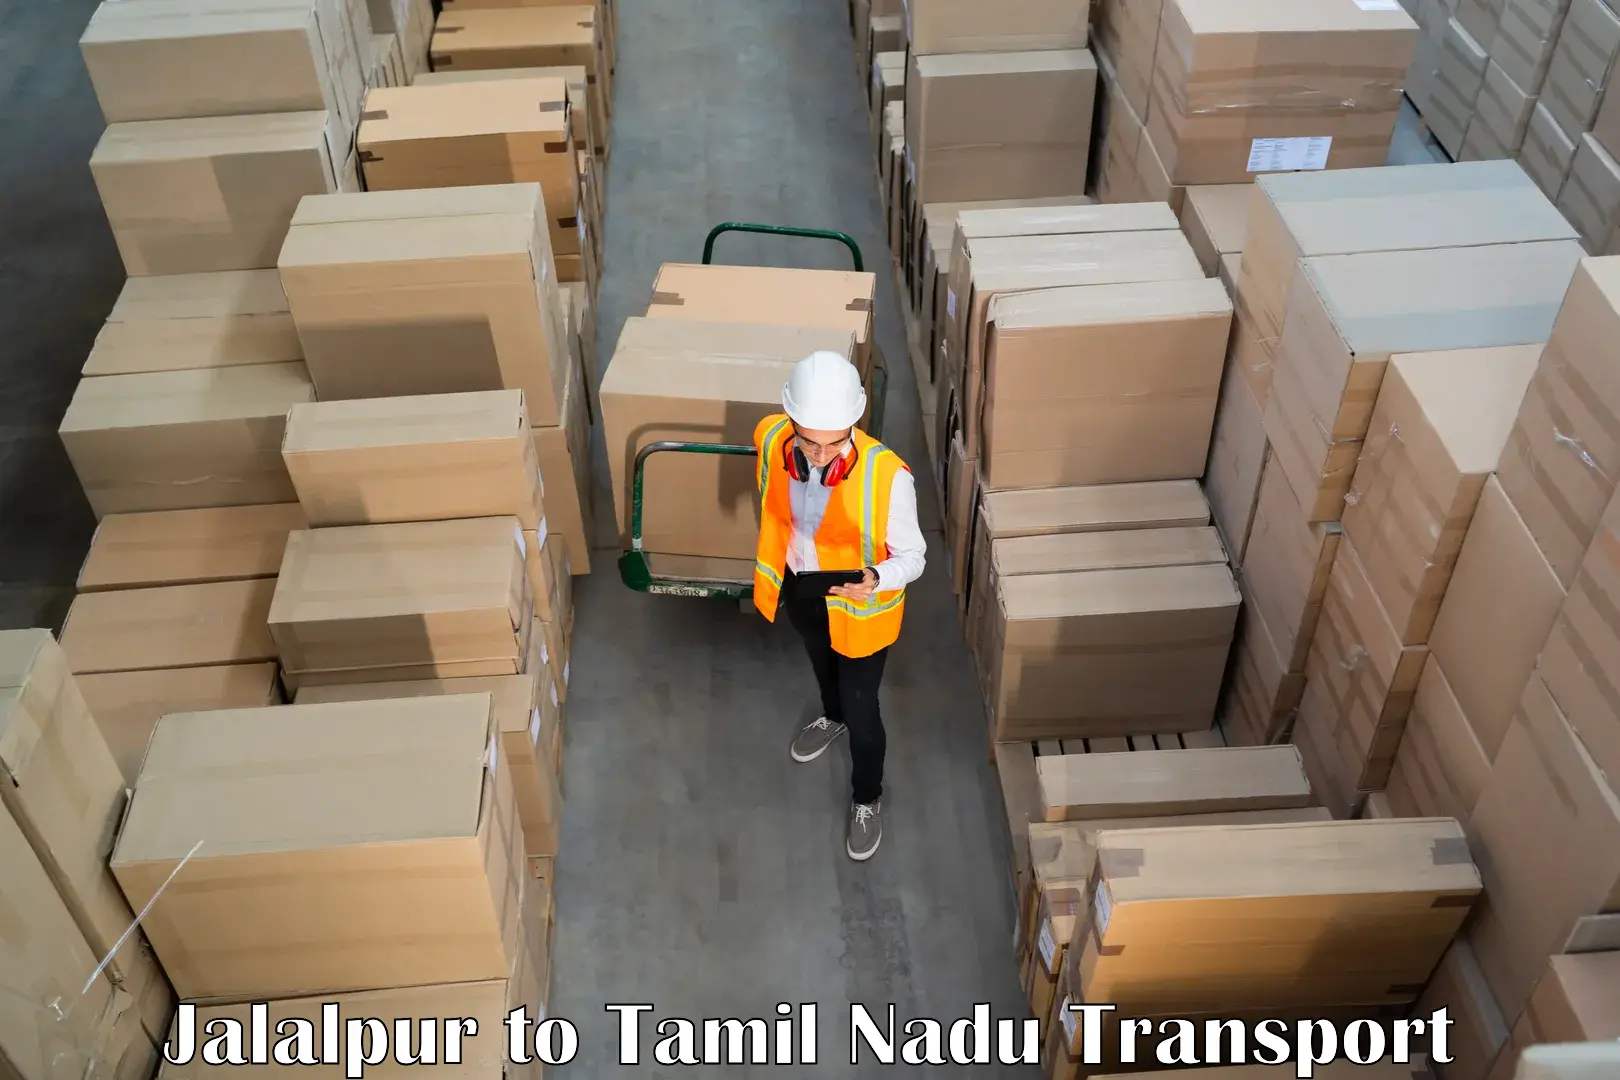 Goods transport services Jalalpur to Chinnasalem